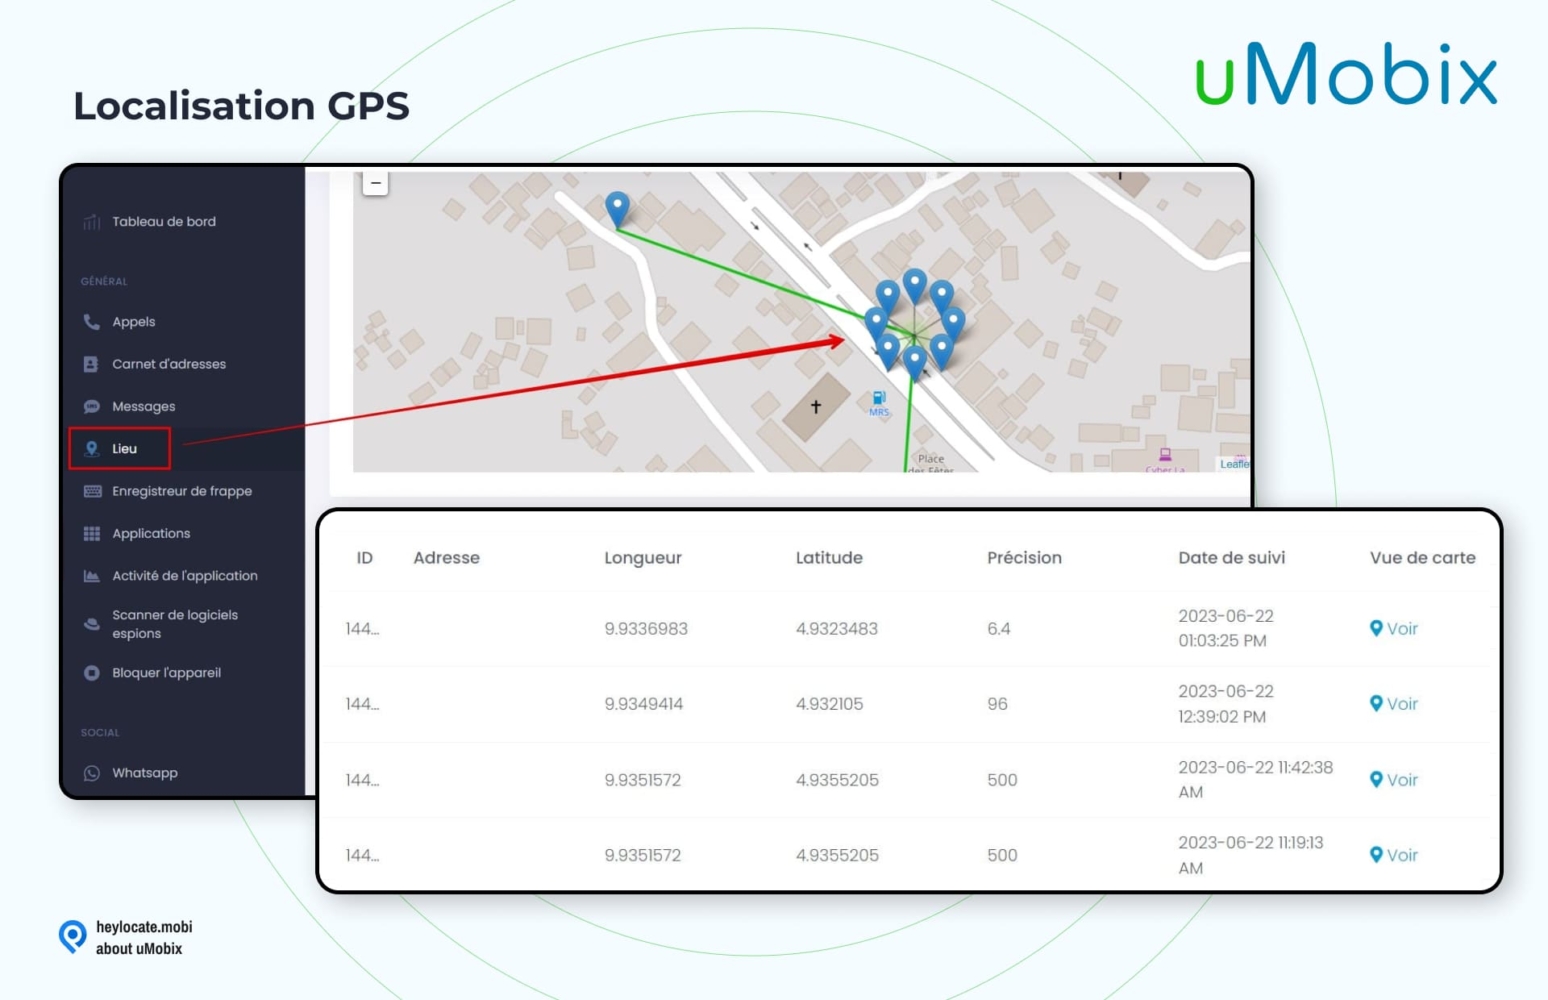 Capture d'écran de la fonction de géolocalisation GPS dans l'interface utilisateur uMobix. Elle montre un panneau de navigation sur la gauche avec l'option "Localisation" en surbrillance. Sur le côté droit, une carte détaillée indique les coordonnées d'un lieu. Sous la carte, il y a un tableau avec des colonnes pour l'ID, l'adresse, la longitude, la latitude, la précision, la date de suivi, et une option pour voir l'emplacement sur la carte, illustrant les capacités précises de suivi de l'emplacement de l'application.